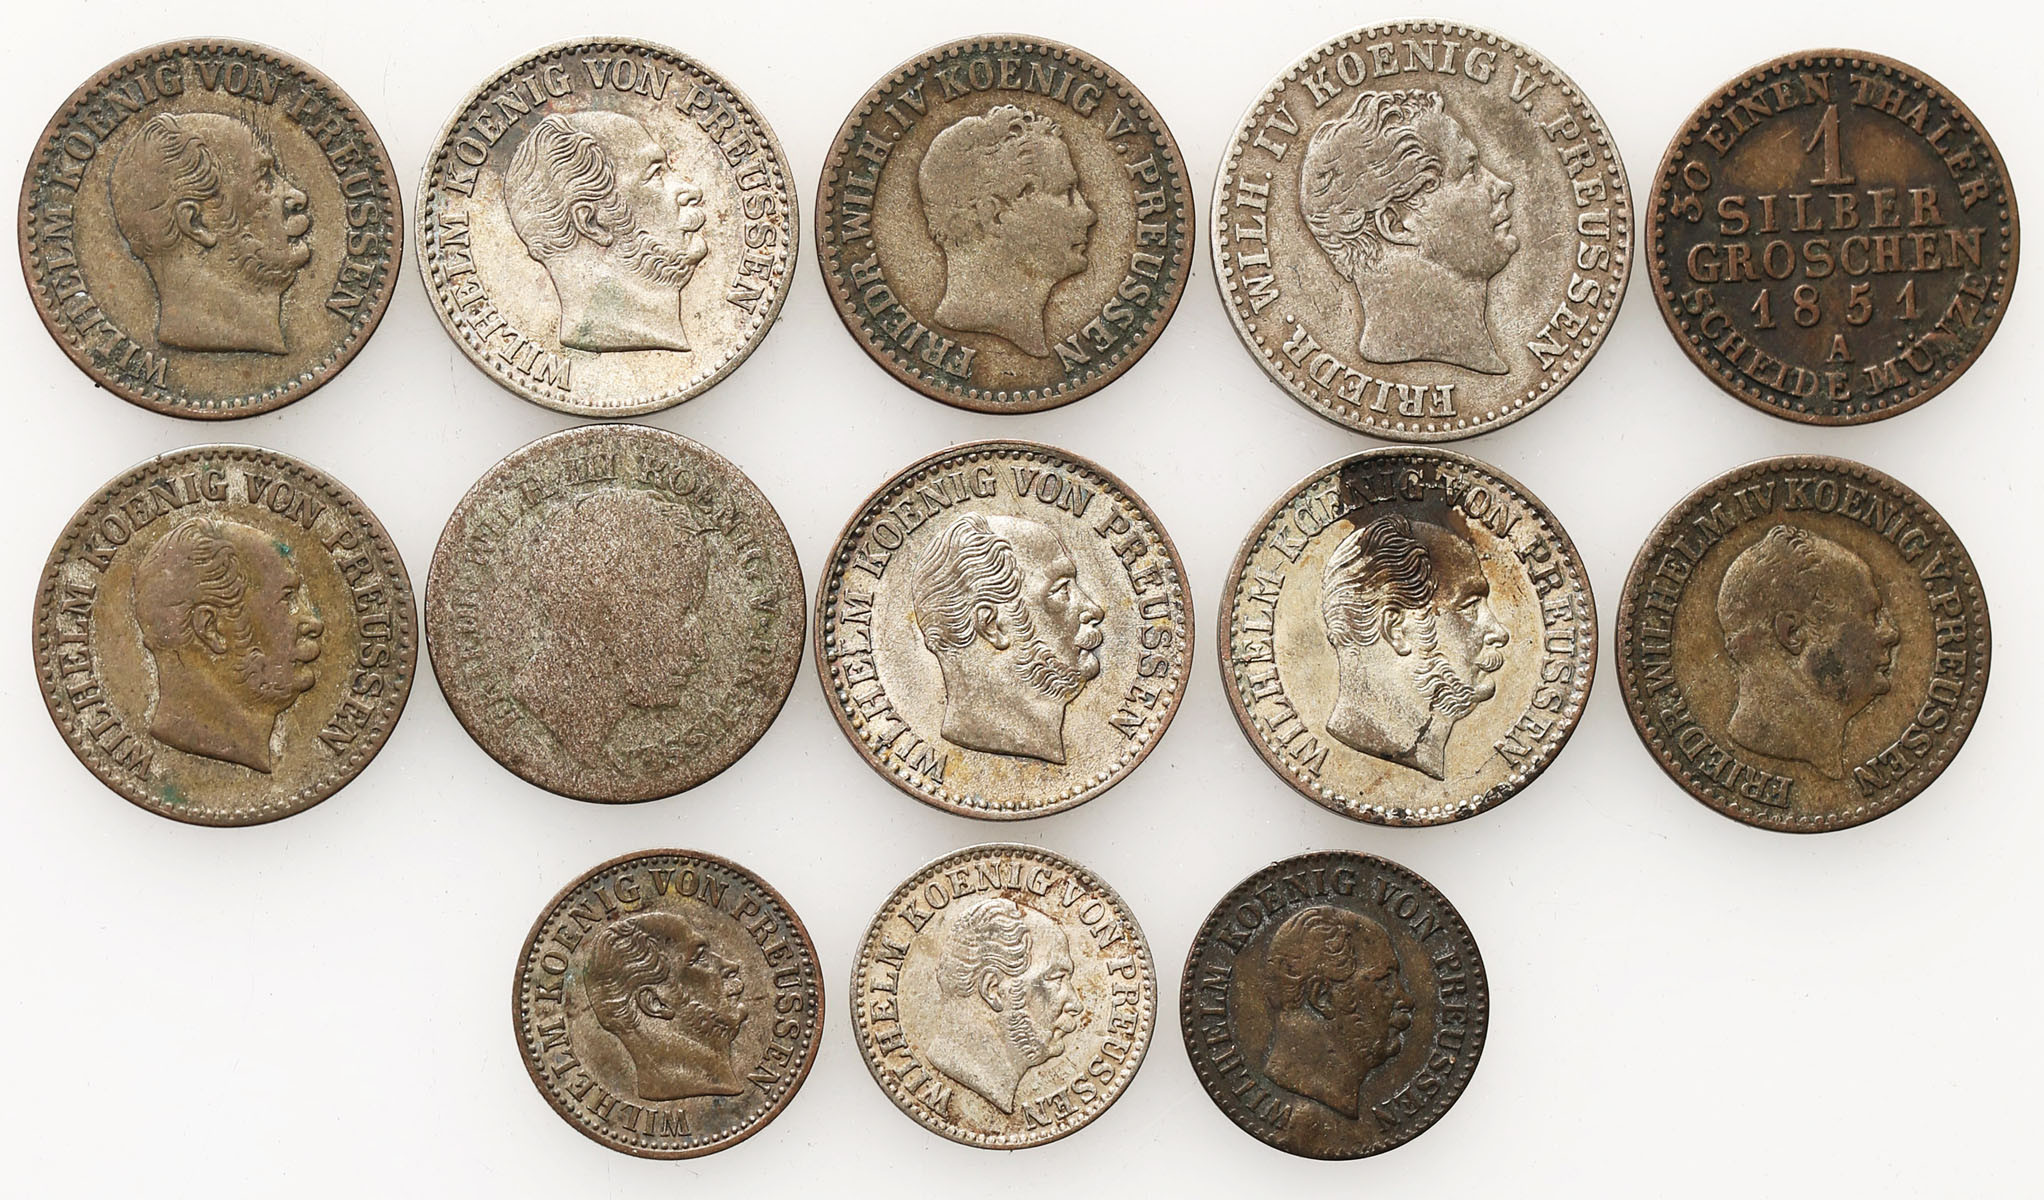 Niemcy, Prusy. 1/2, 1, 2 1/2 silbergroschen 1828-1871, zestaw 13 monet